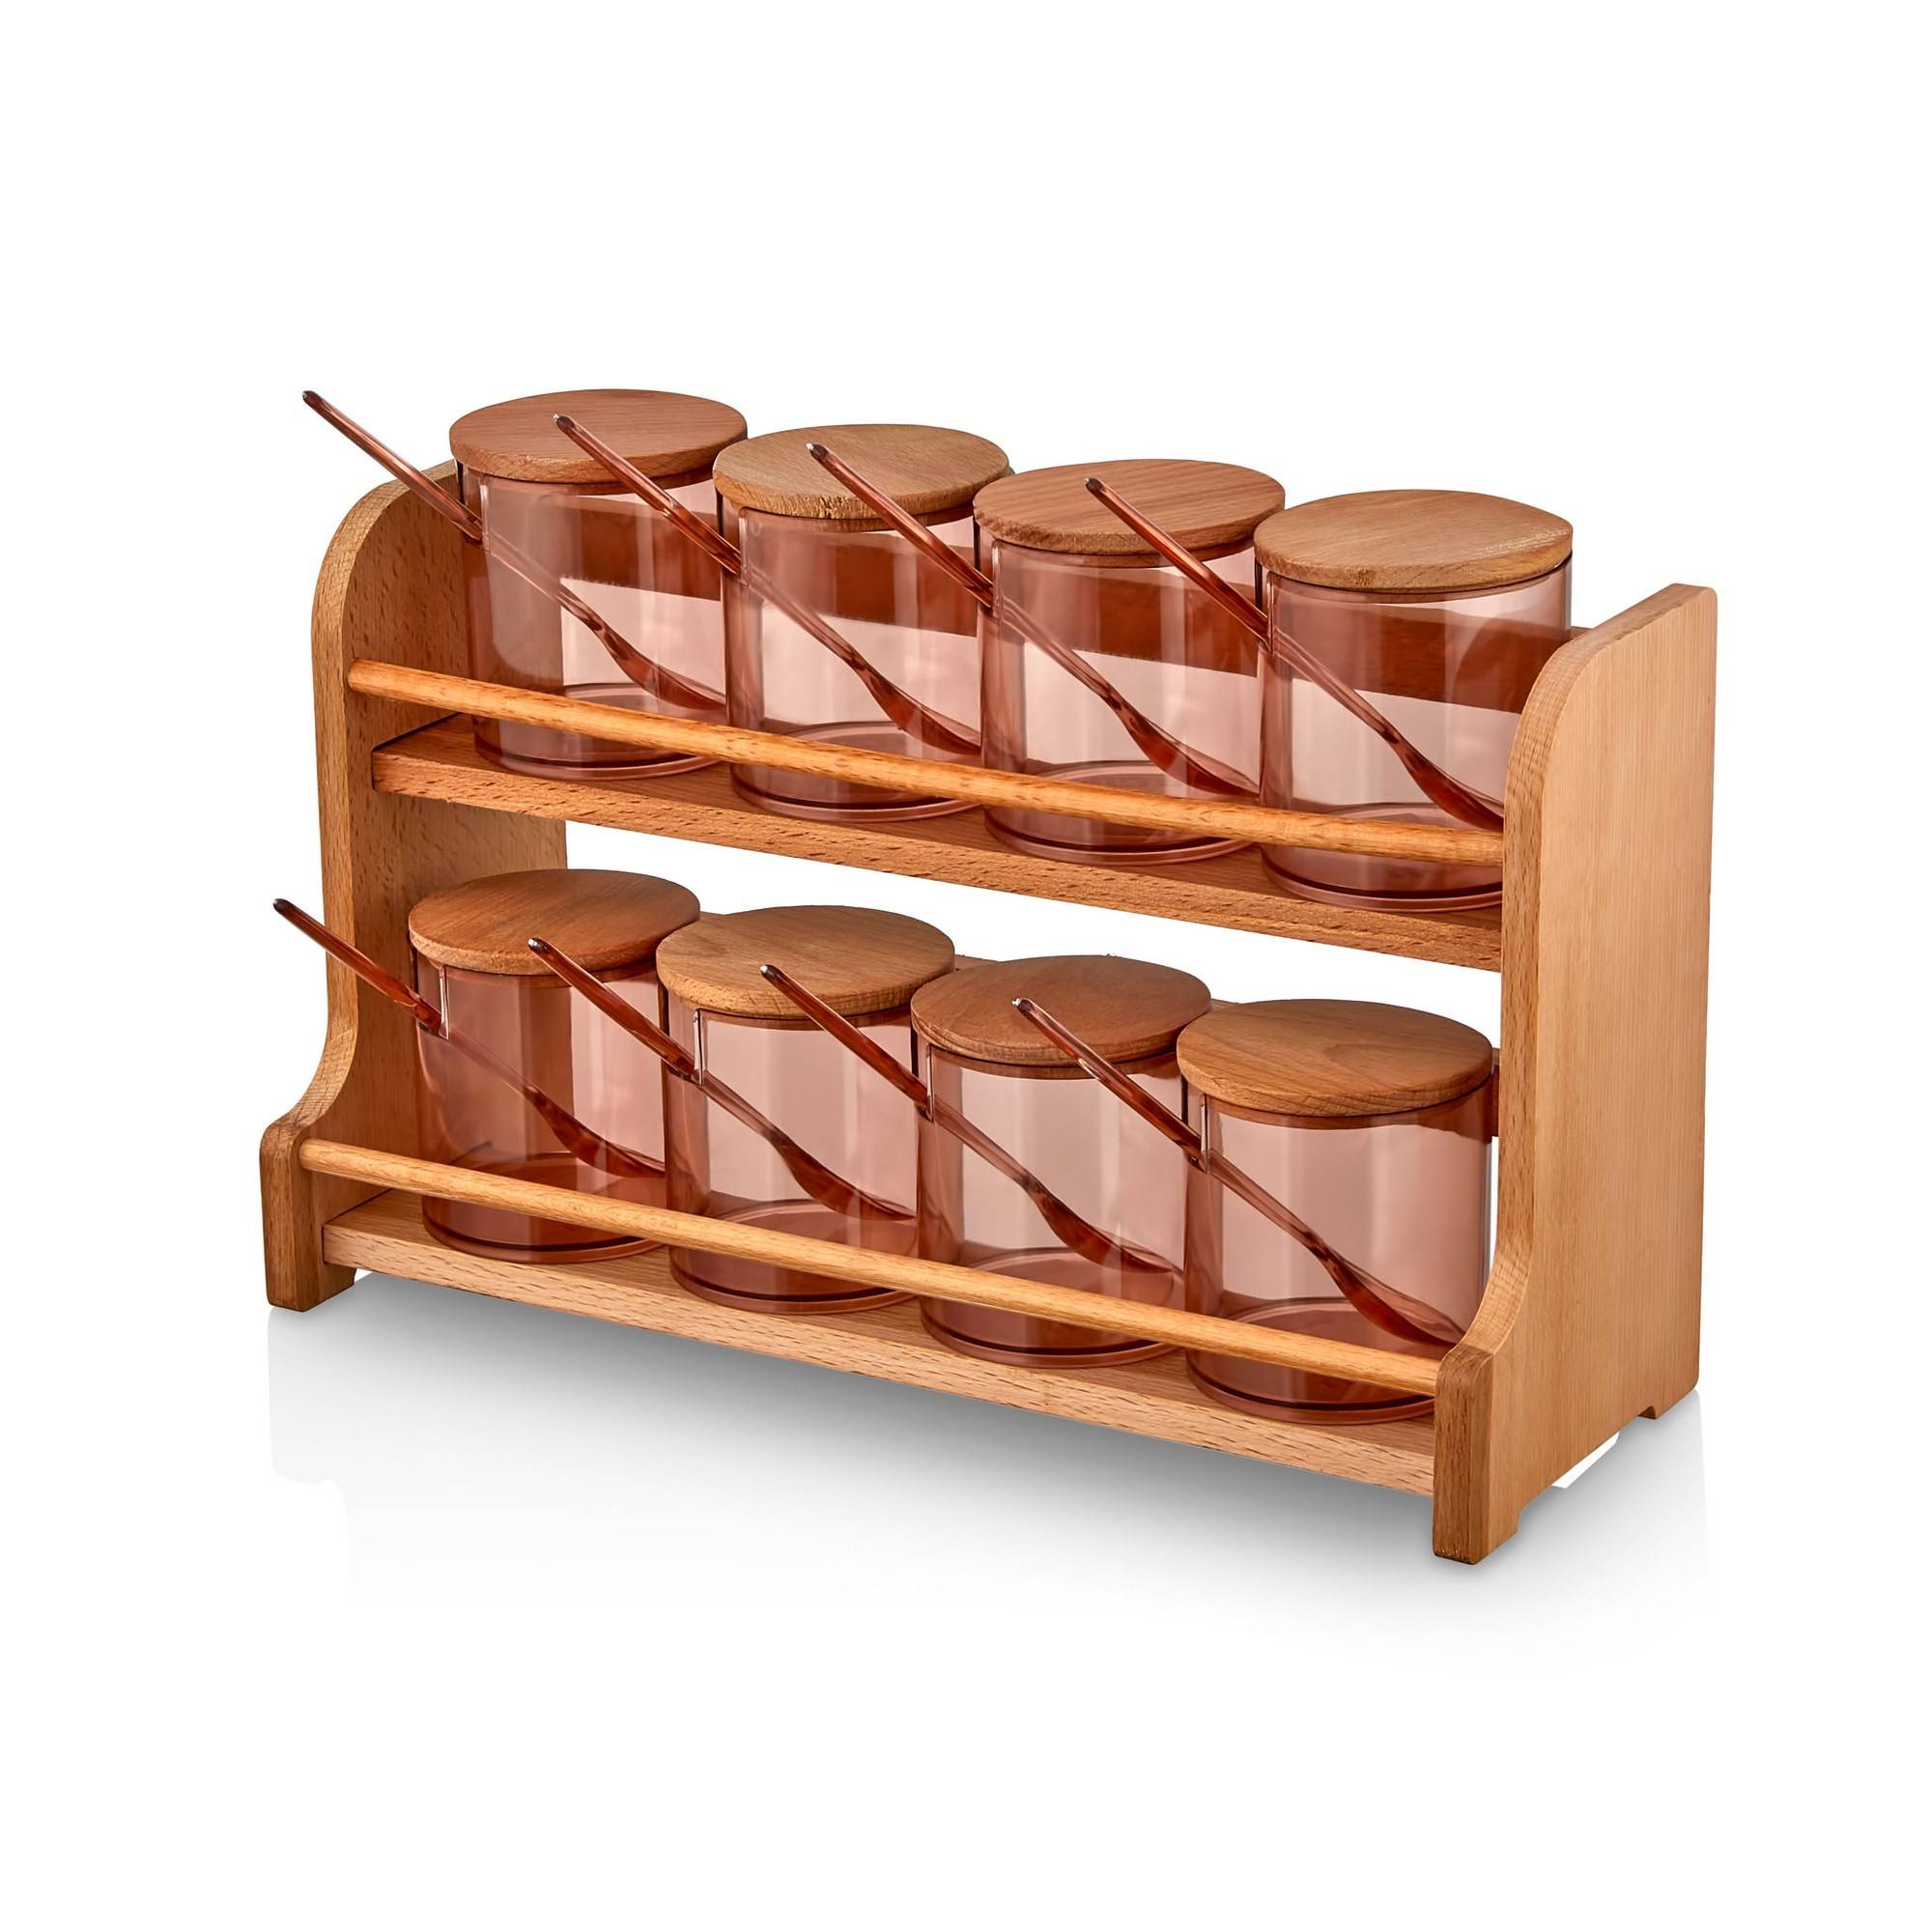 Set de 4 pots à épices avec cuillères et plateau en bois clair